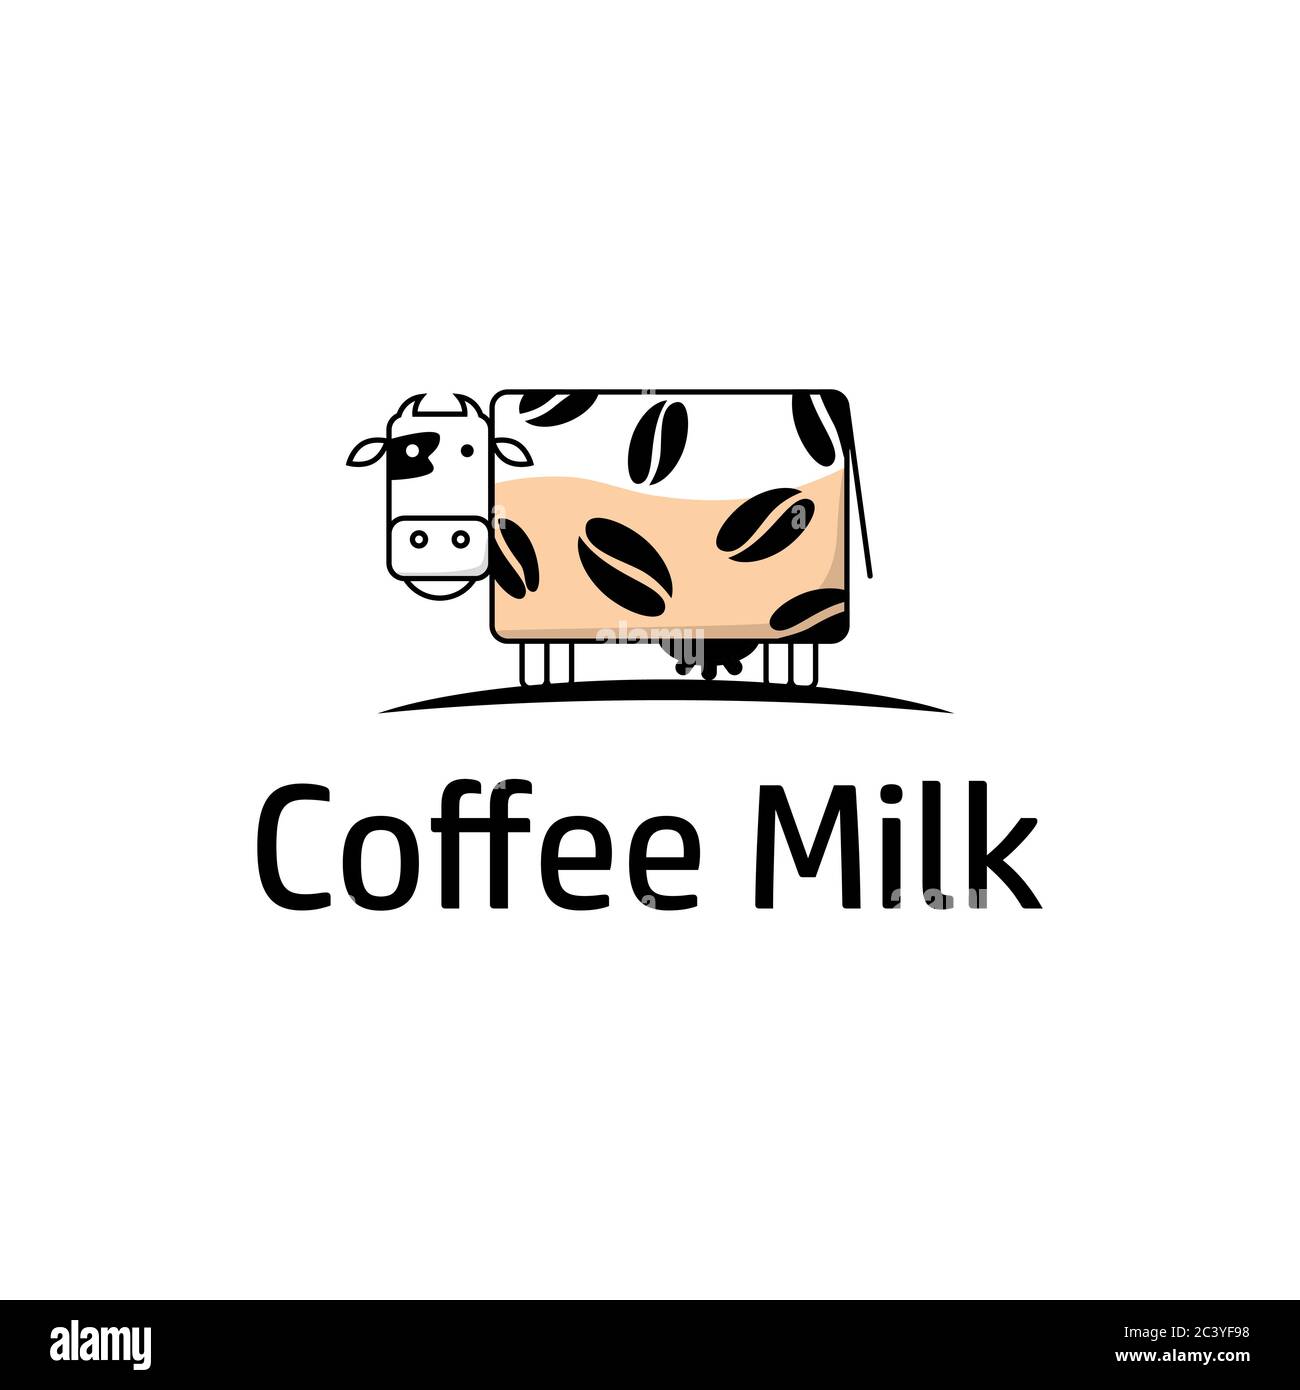 Cow head dairy logo design Royalty Free Vector Image